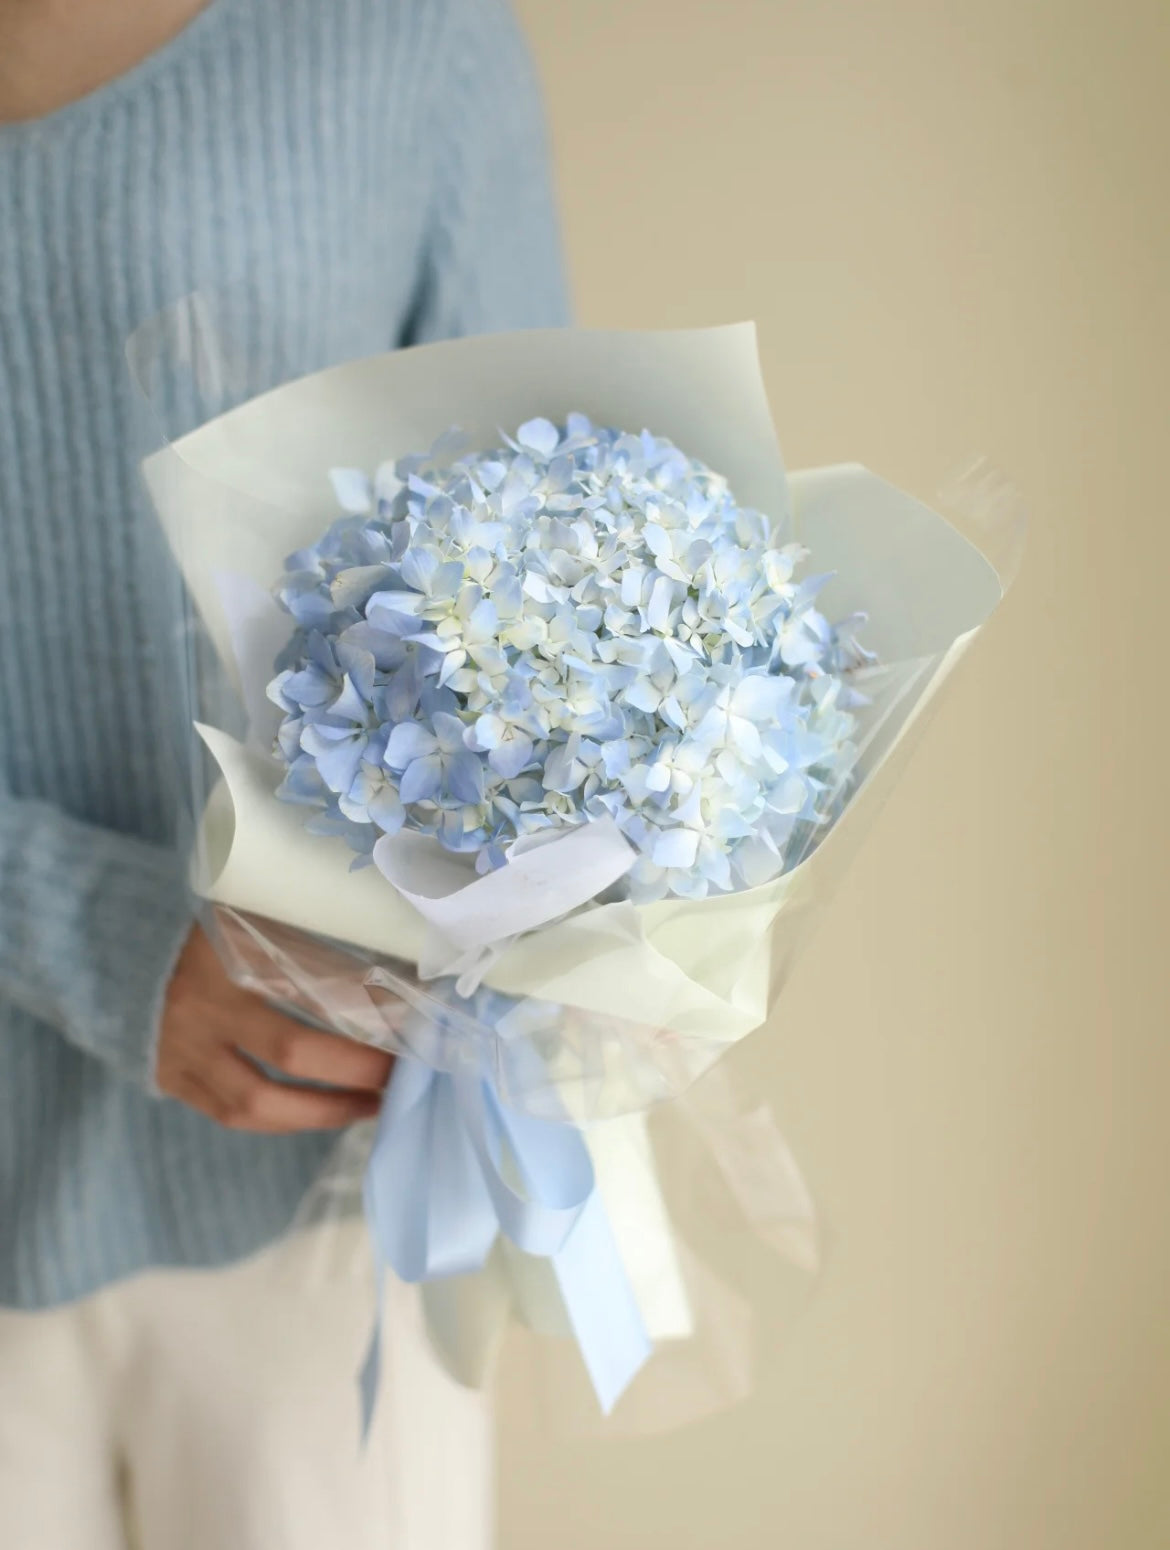 單支淺藍繡球花束